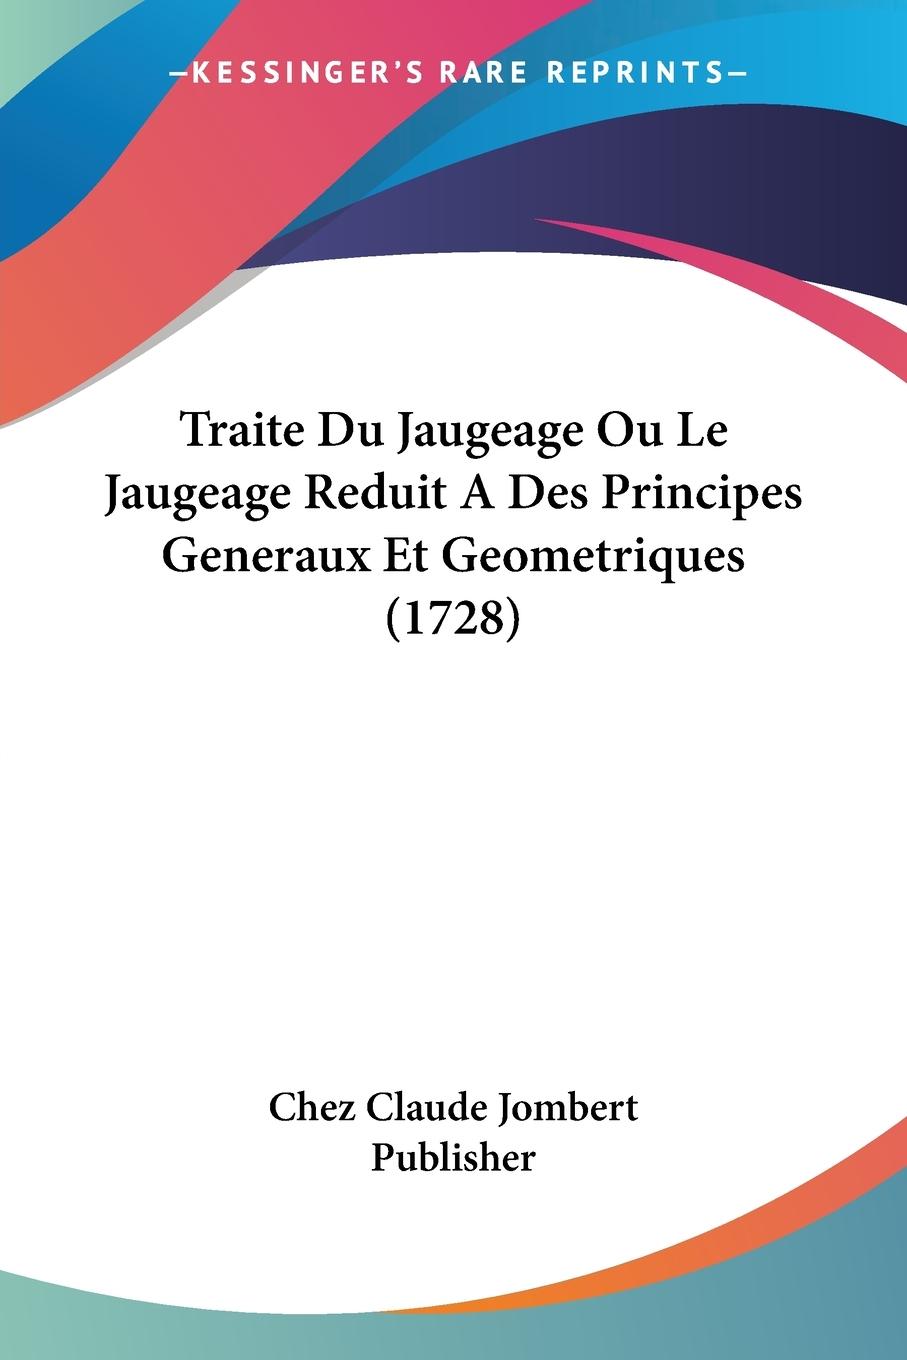 Traite Du Jaugeage Ou Le Jaugeage Reduit A Des Principes Generaux Et Geometriques (1728) - Chez Claude Jombert Publisher